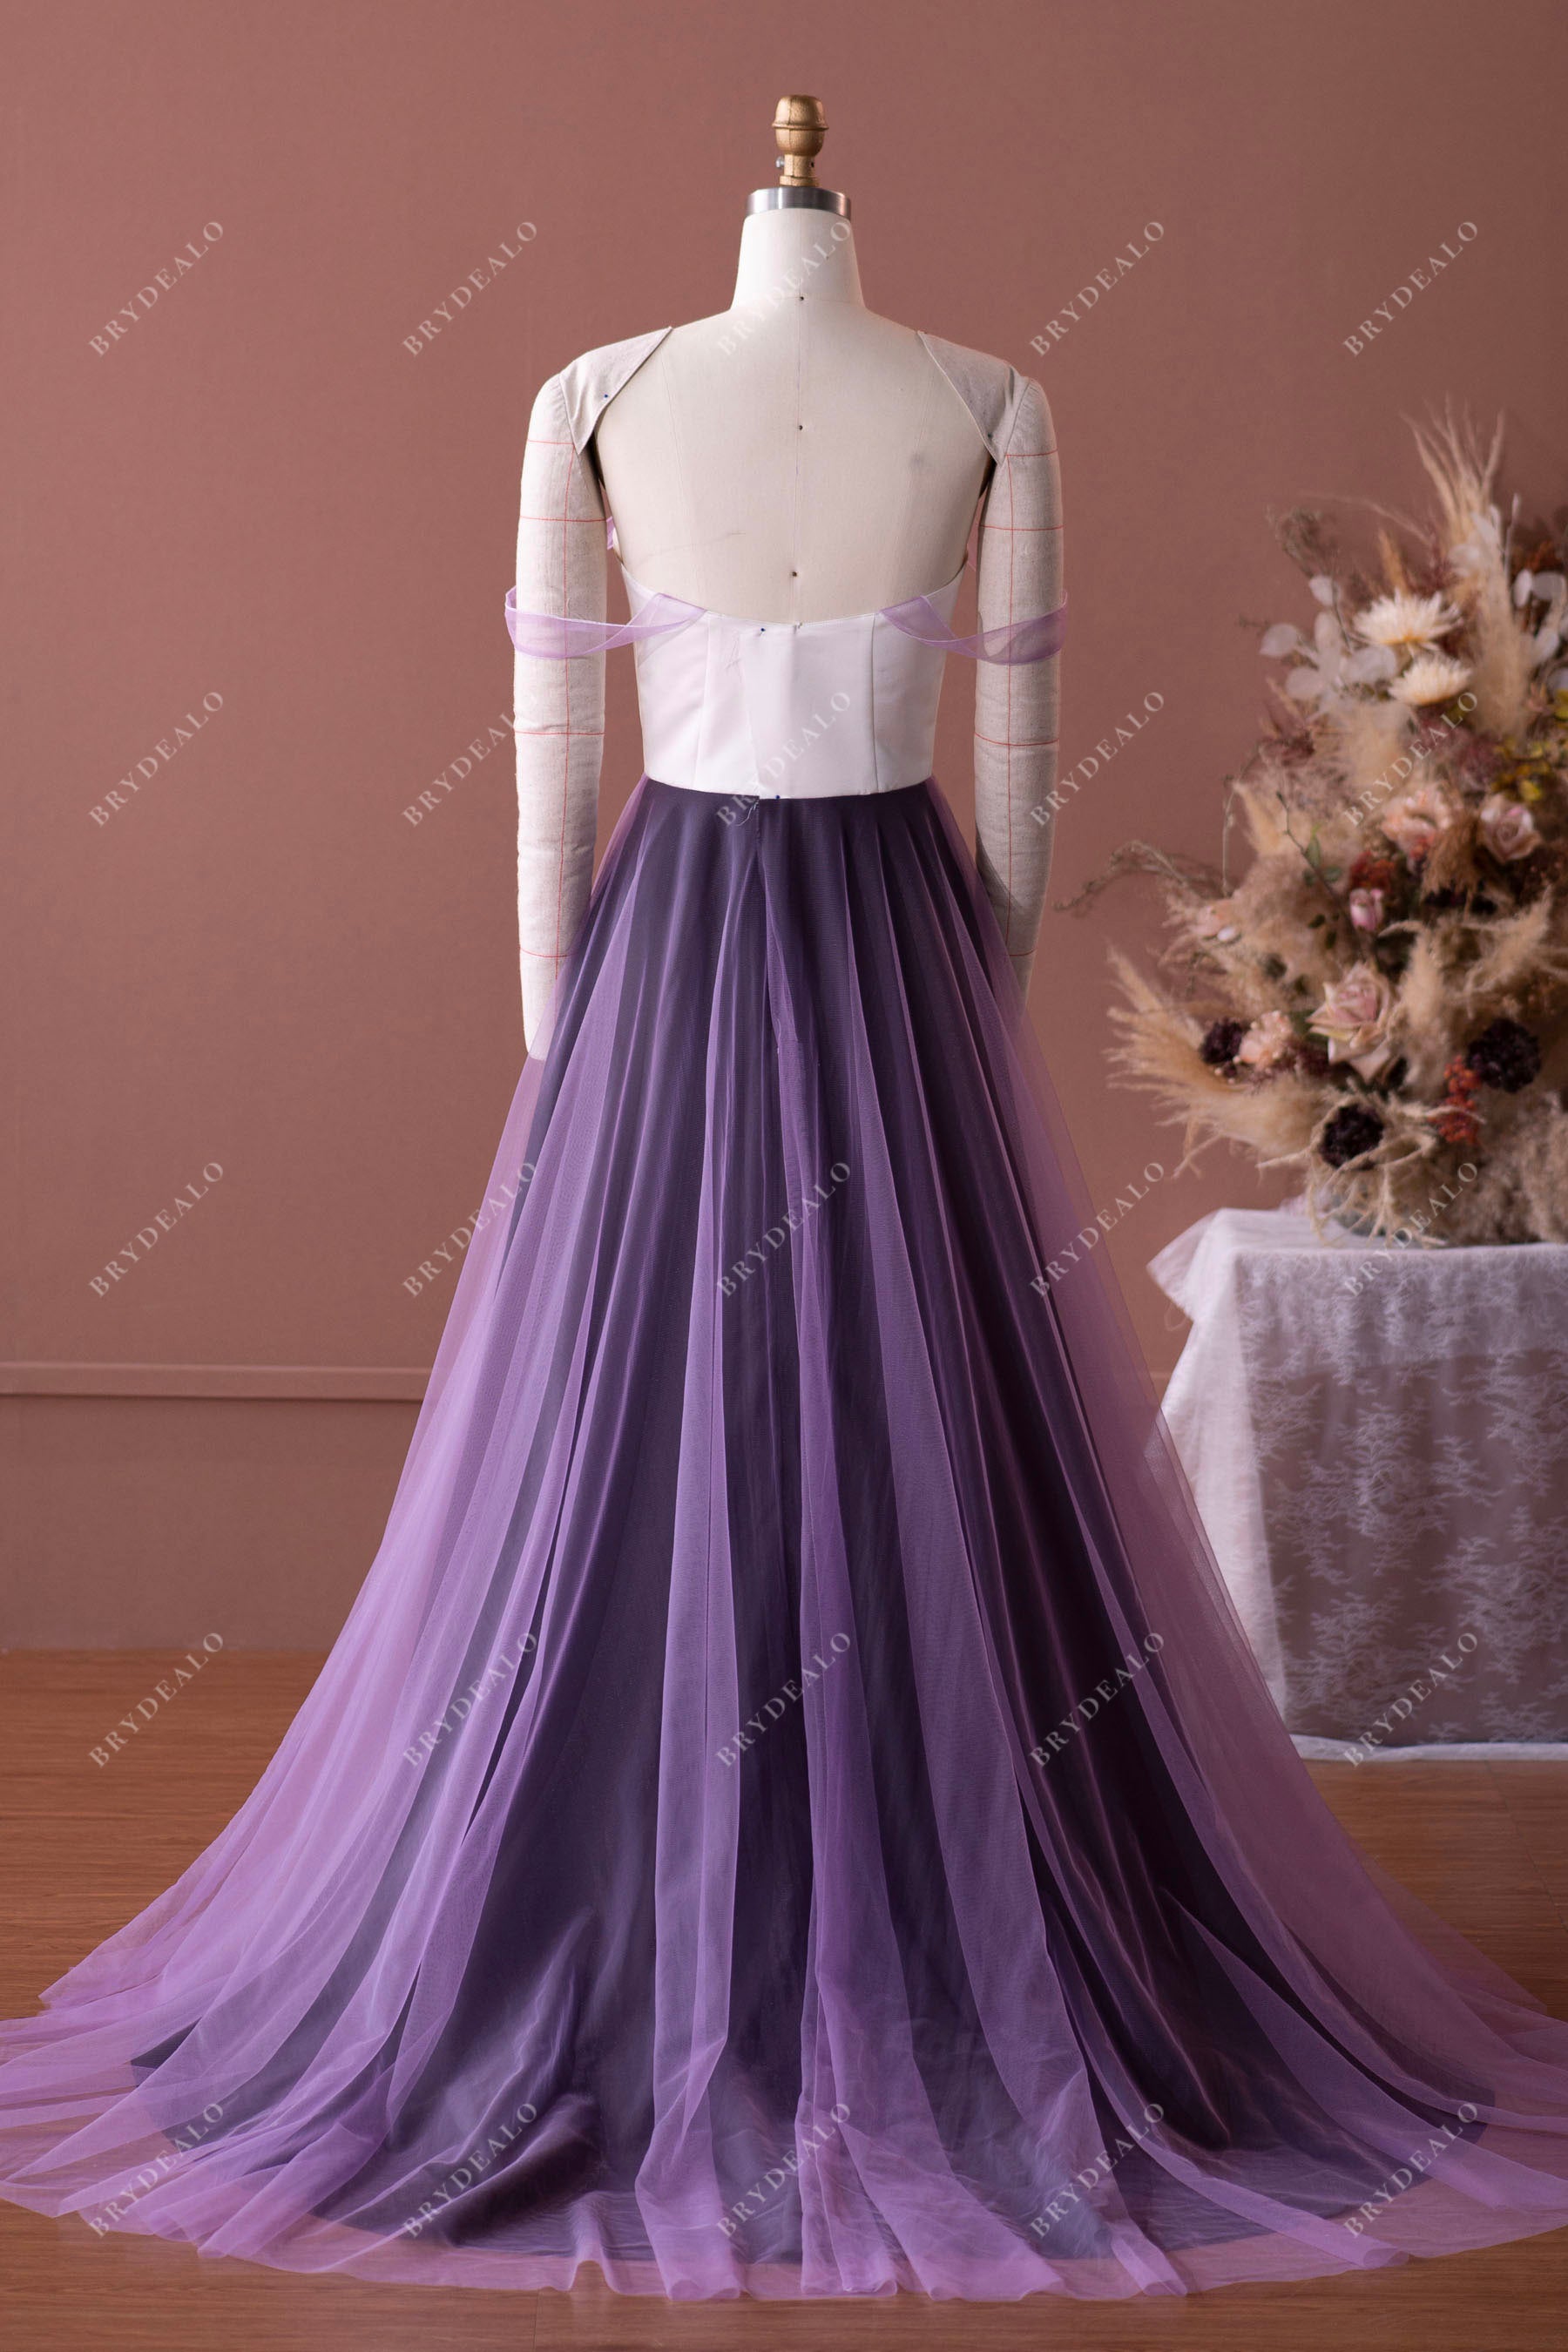 designer custom off-shoulder A-line wedding gown mockup